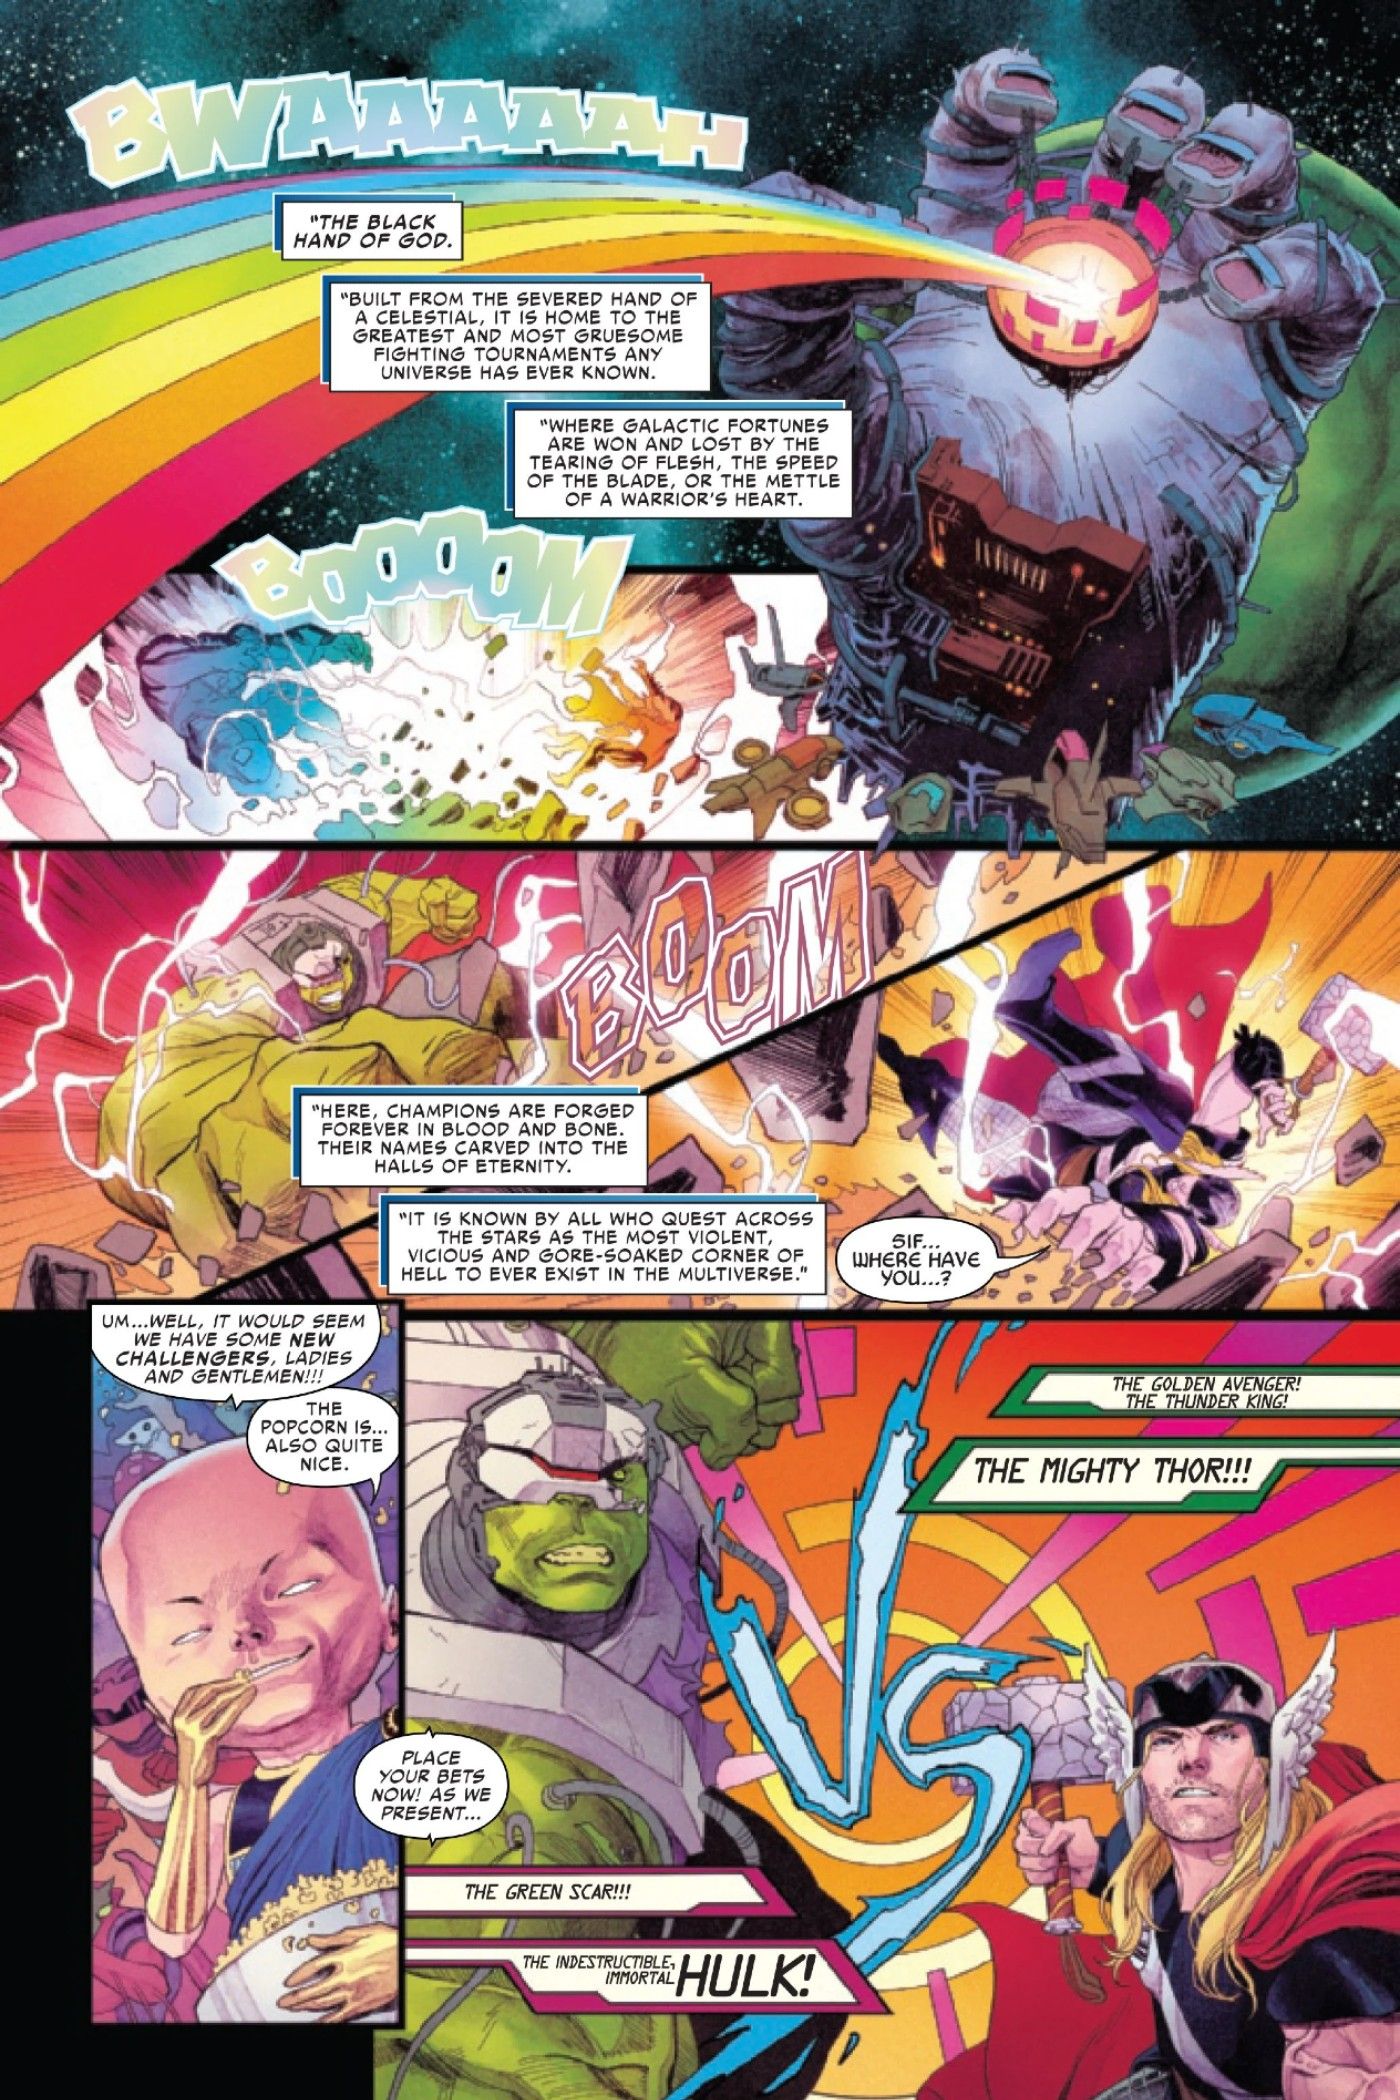 Thor e Hulk batalham pelo multiverso em Crossover Épico 5